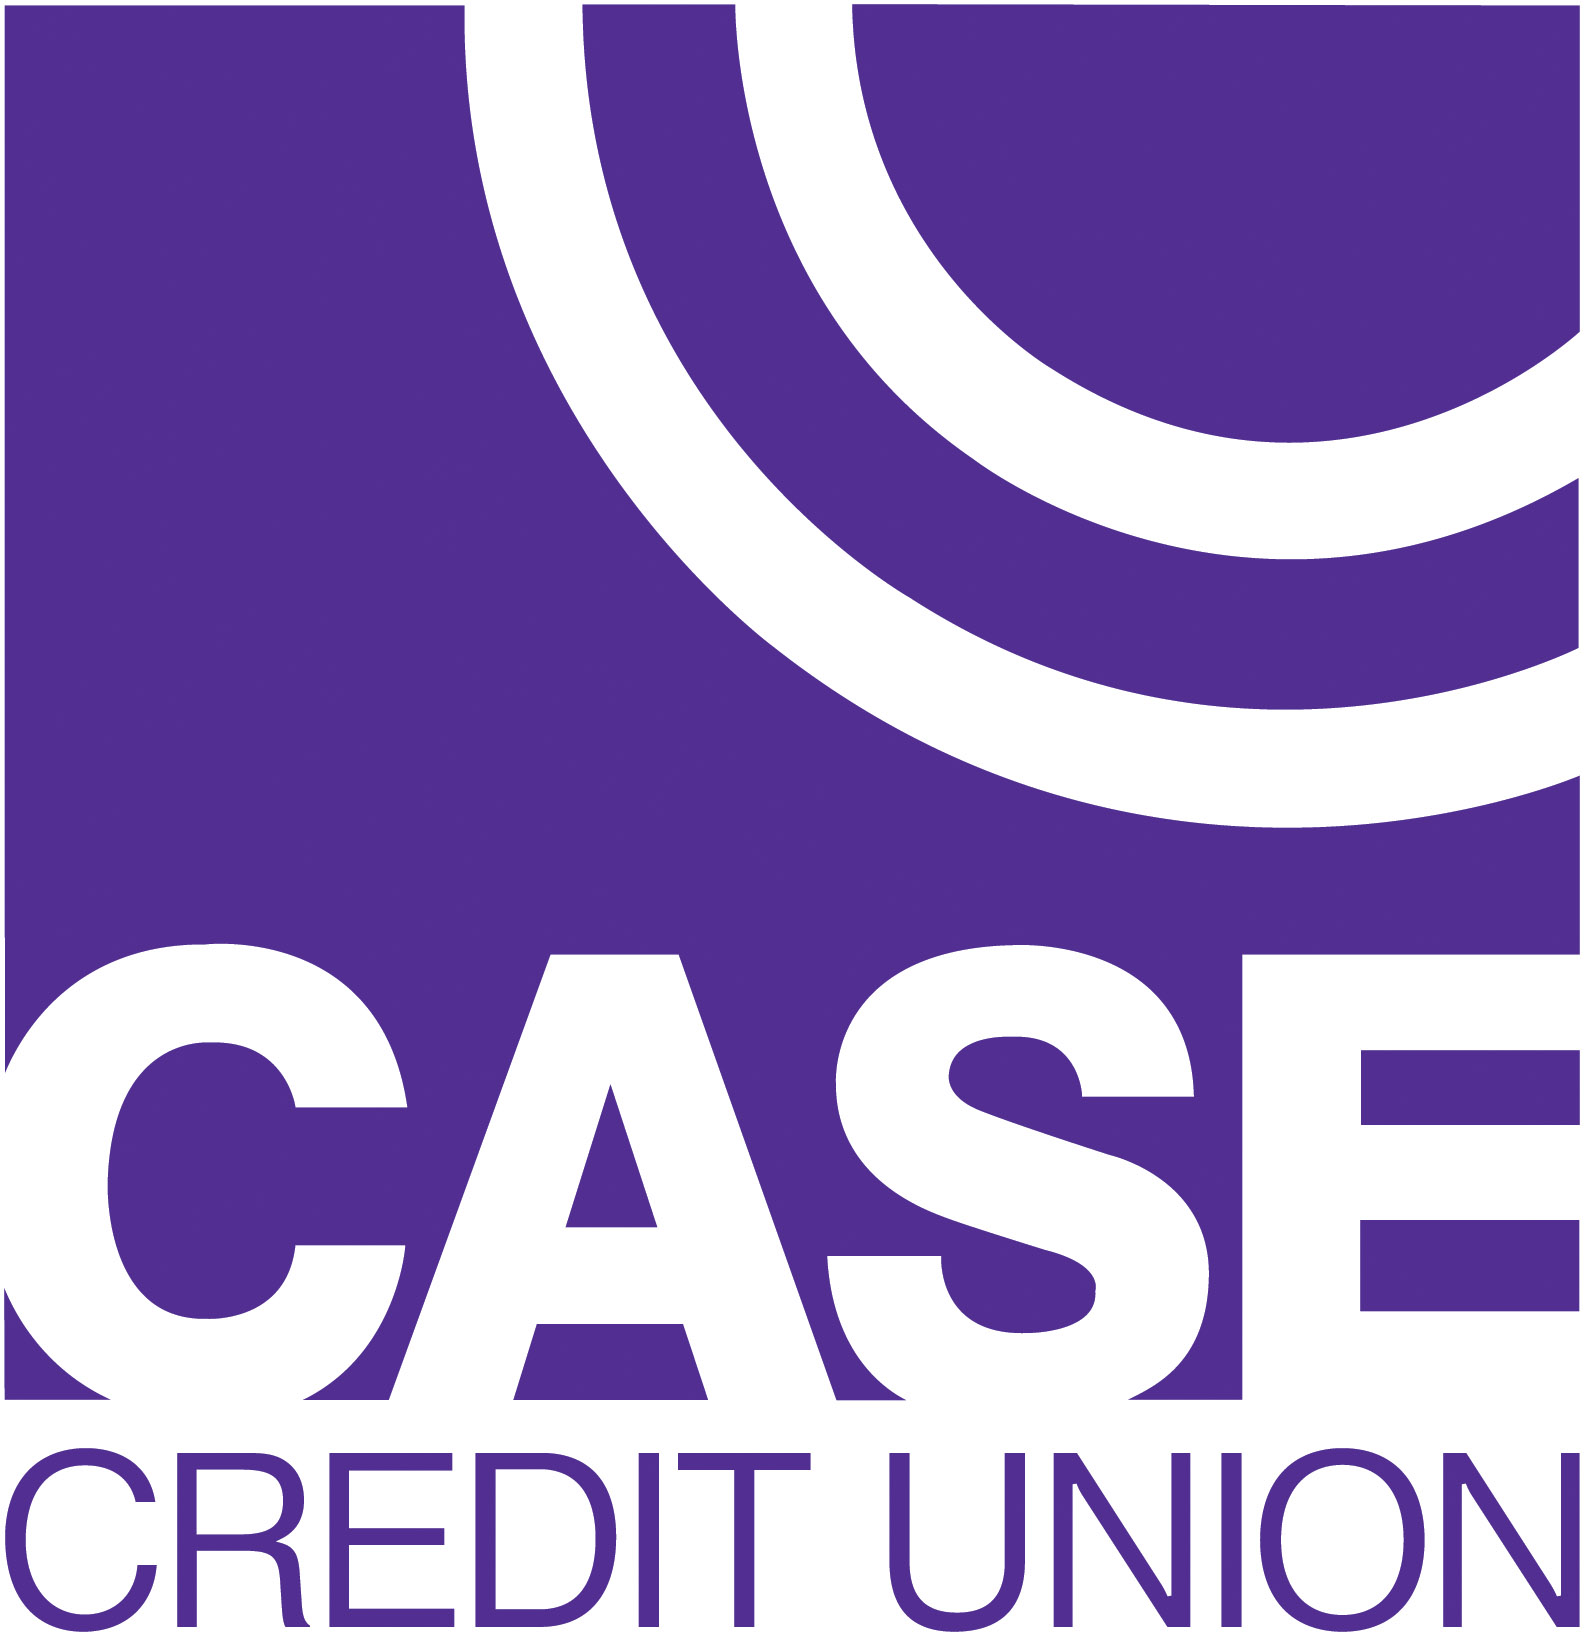 CASE Logo